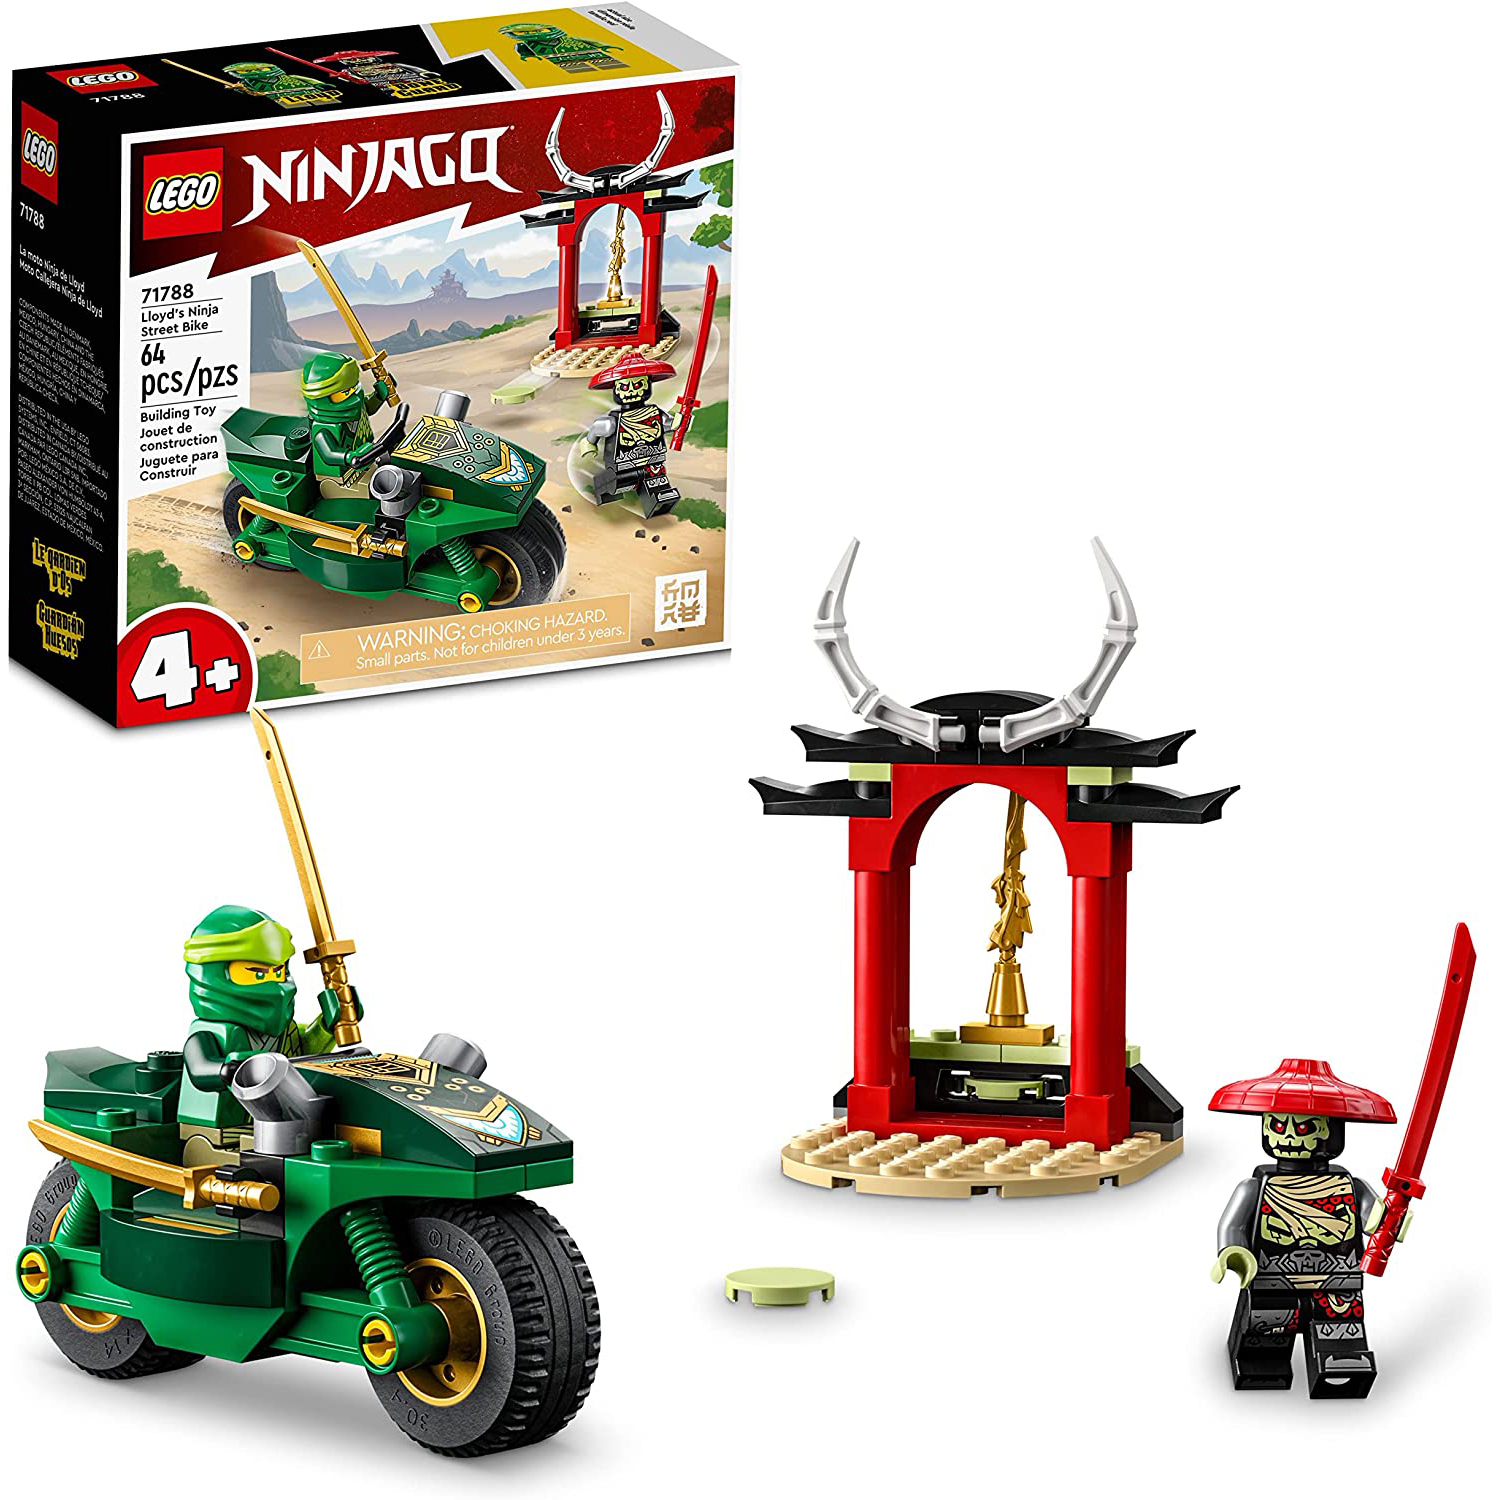 Конструктор LEGO NINJAGO Уличный байк Ллойда, 64 детали, 71788 lego ninjago храм додзё ниндзя 71767